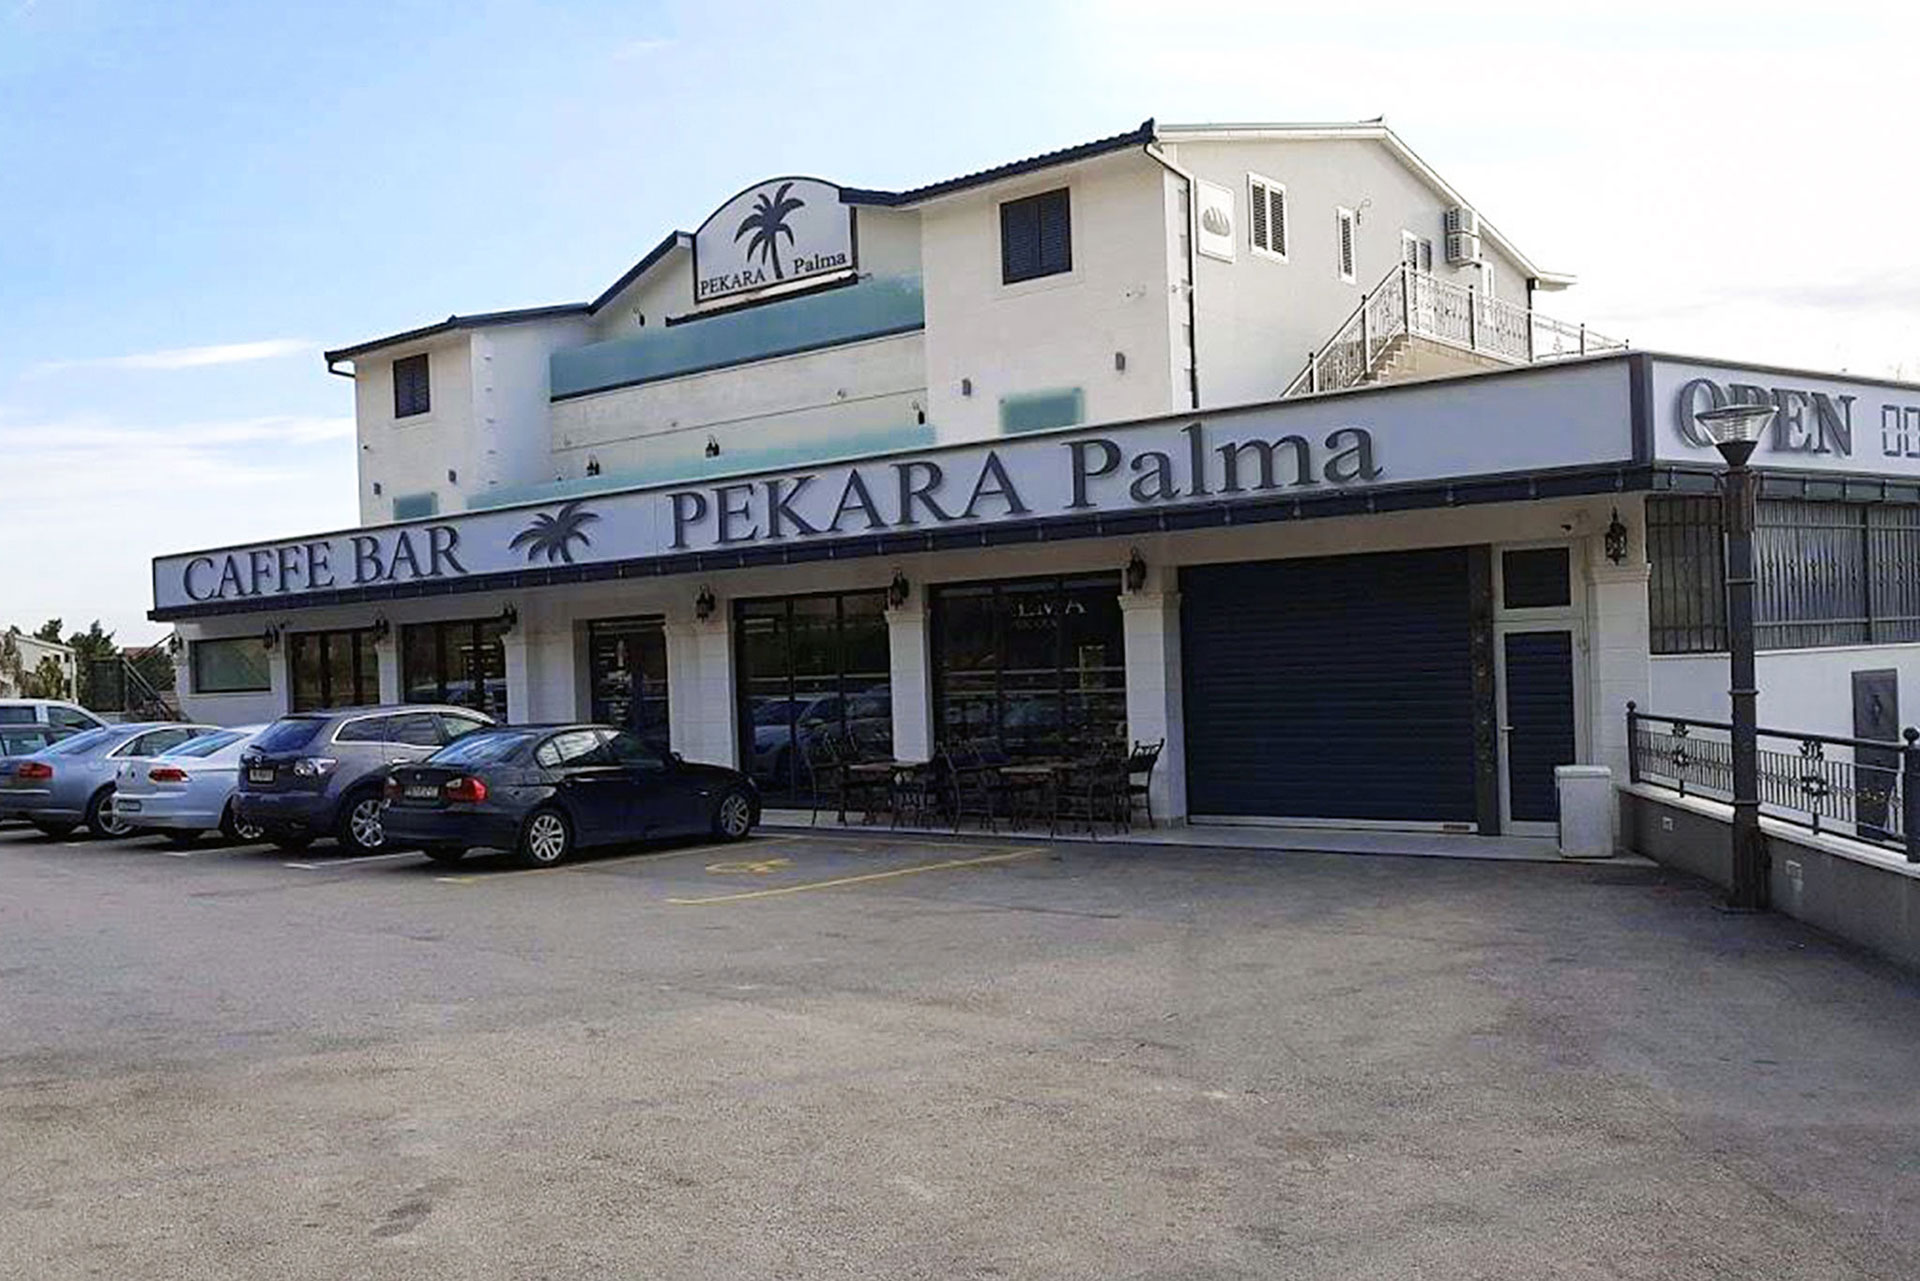 Pekara Palma